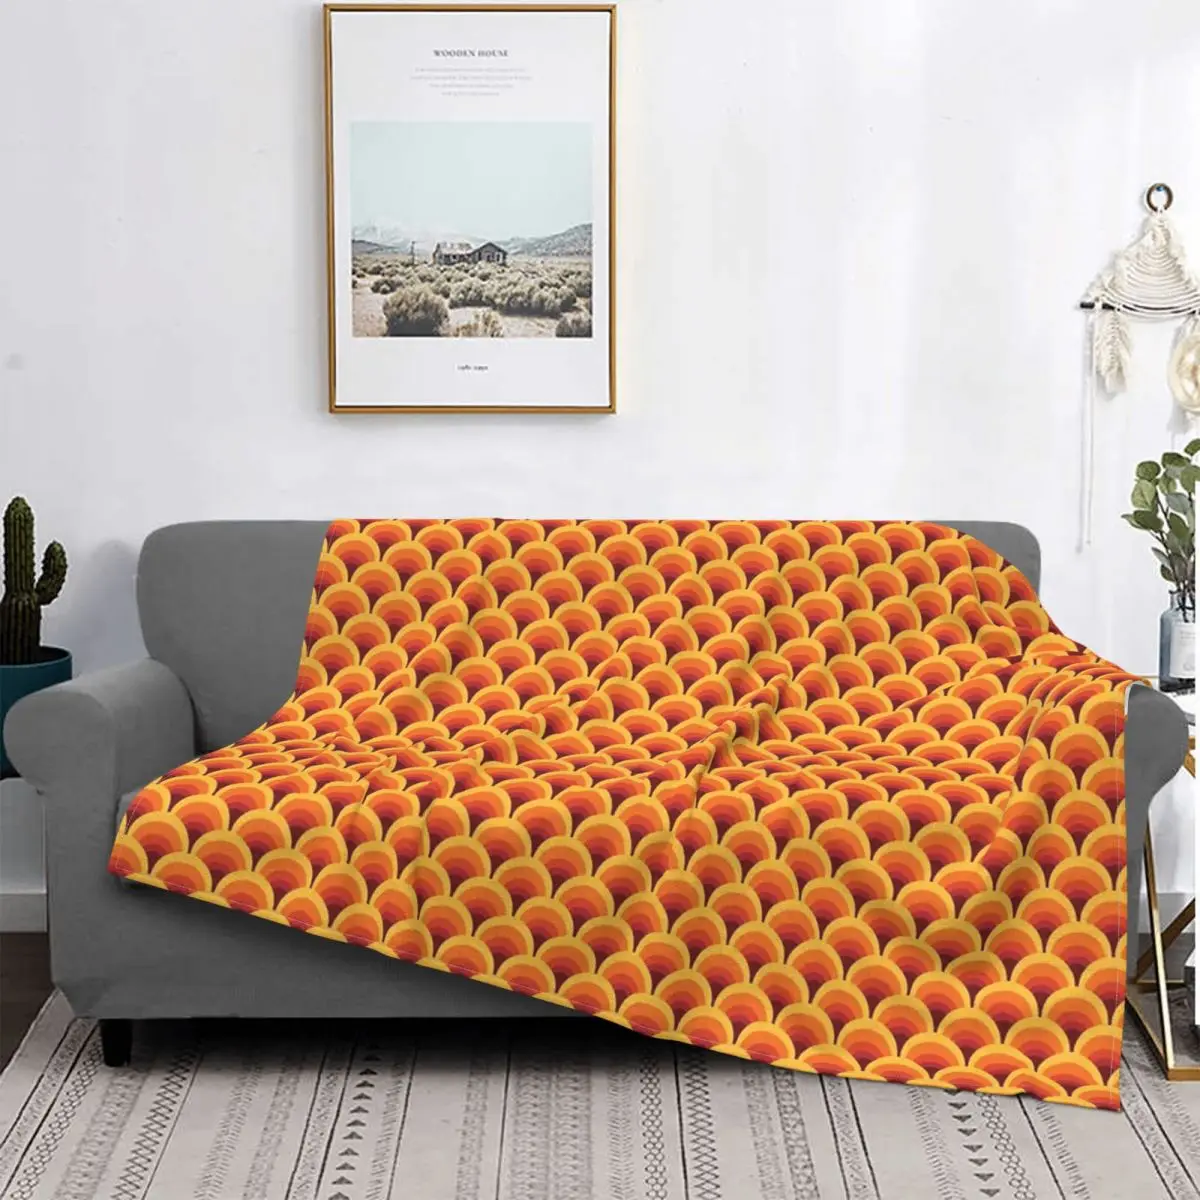 

Одеяло теплое в стиле ретро, мягкое удобное декоративное пушистое одеяло оранжевого цвета с переходом цветов волн, для дивана, кровати, стула